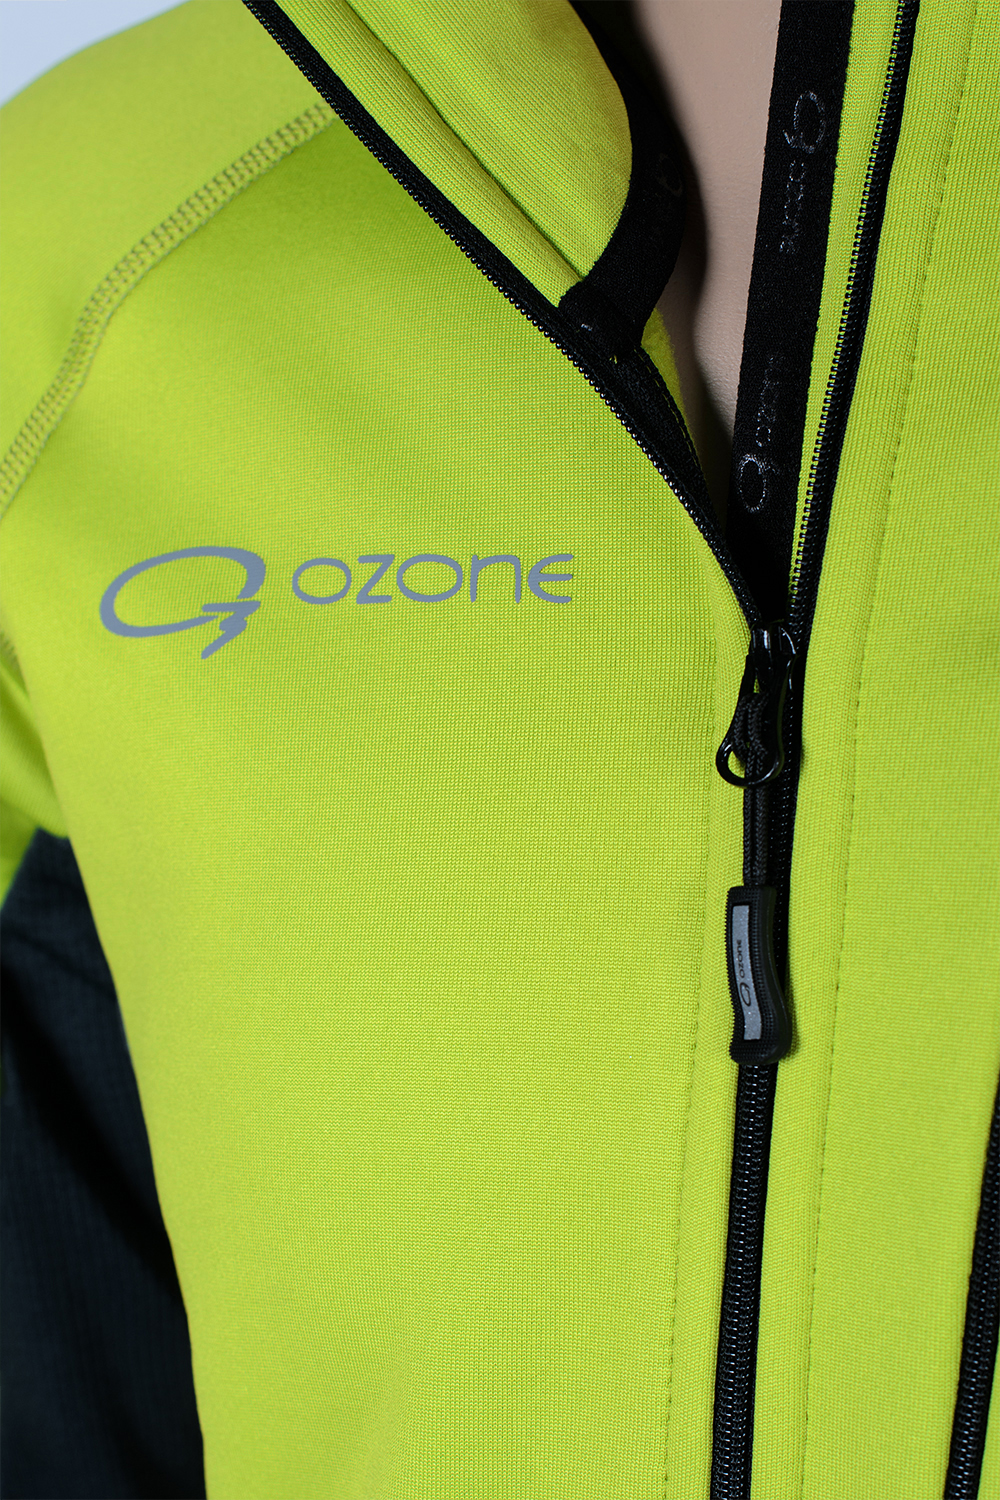 Мужской теплый спортивный пуловер Gist-1 купить в магазине термобелья для спорта O3 Ozone